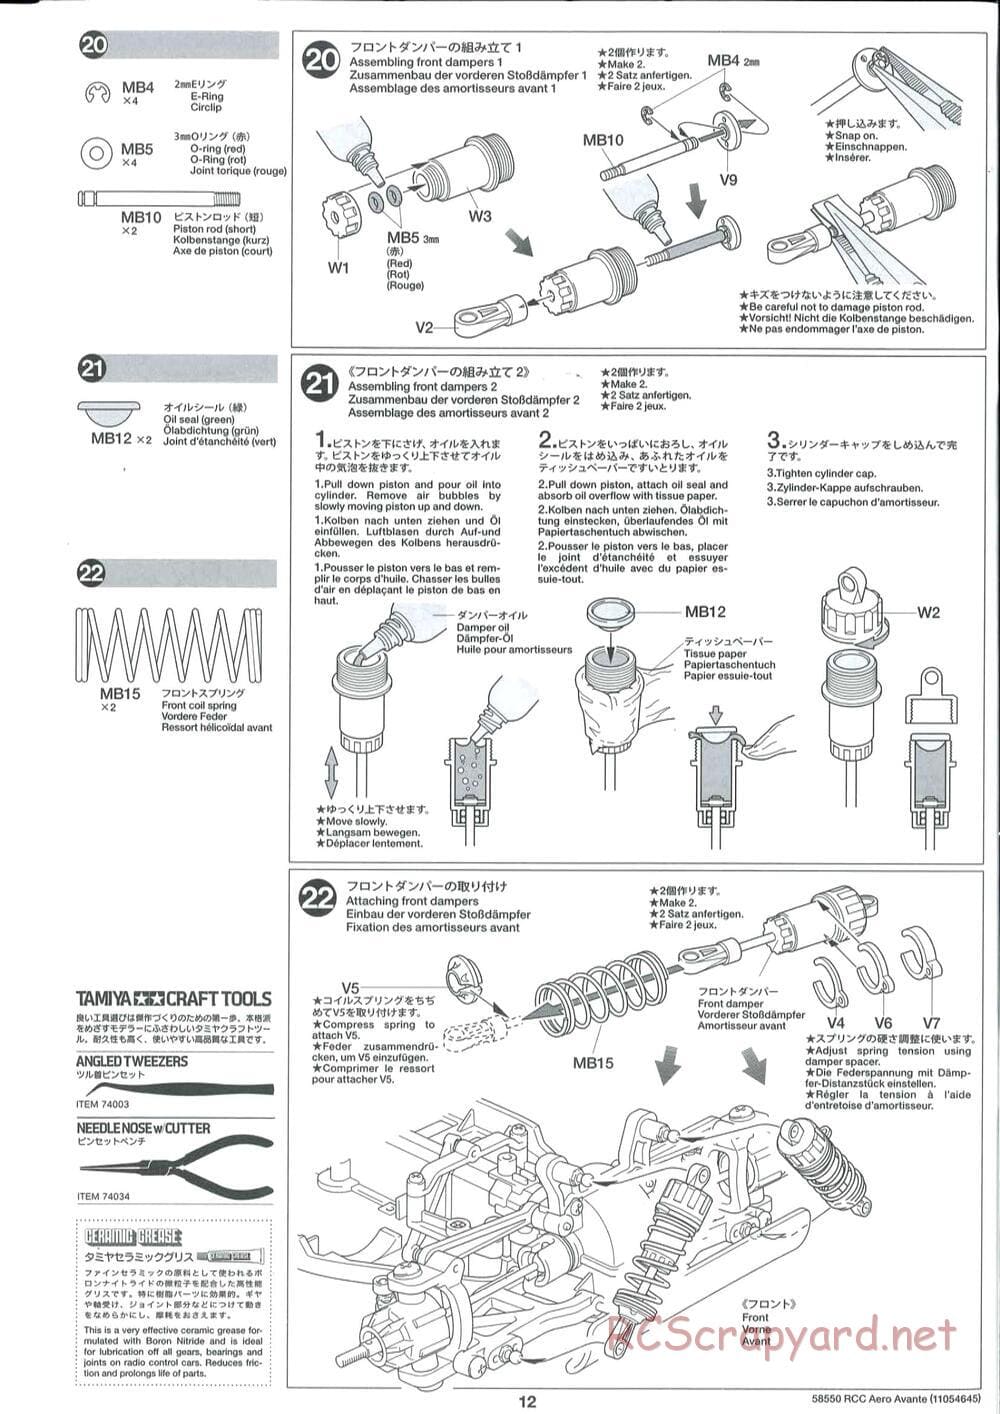 Tamiya - Aero Avante Chassis - Manual - Page 12